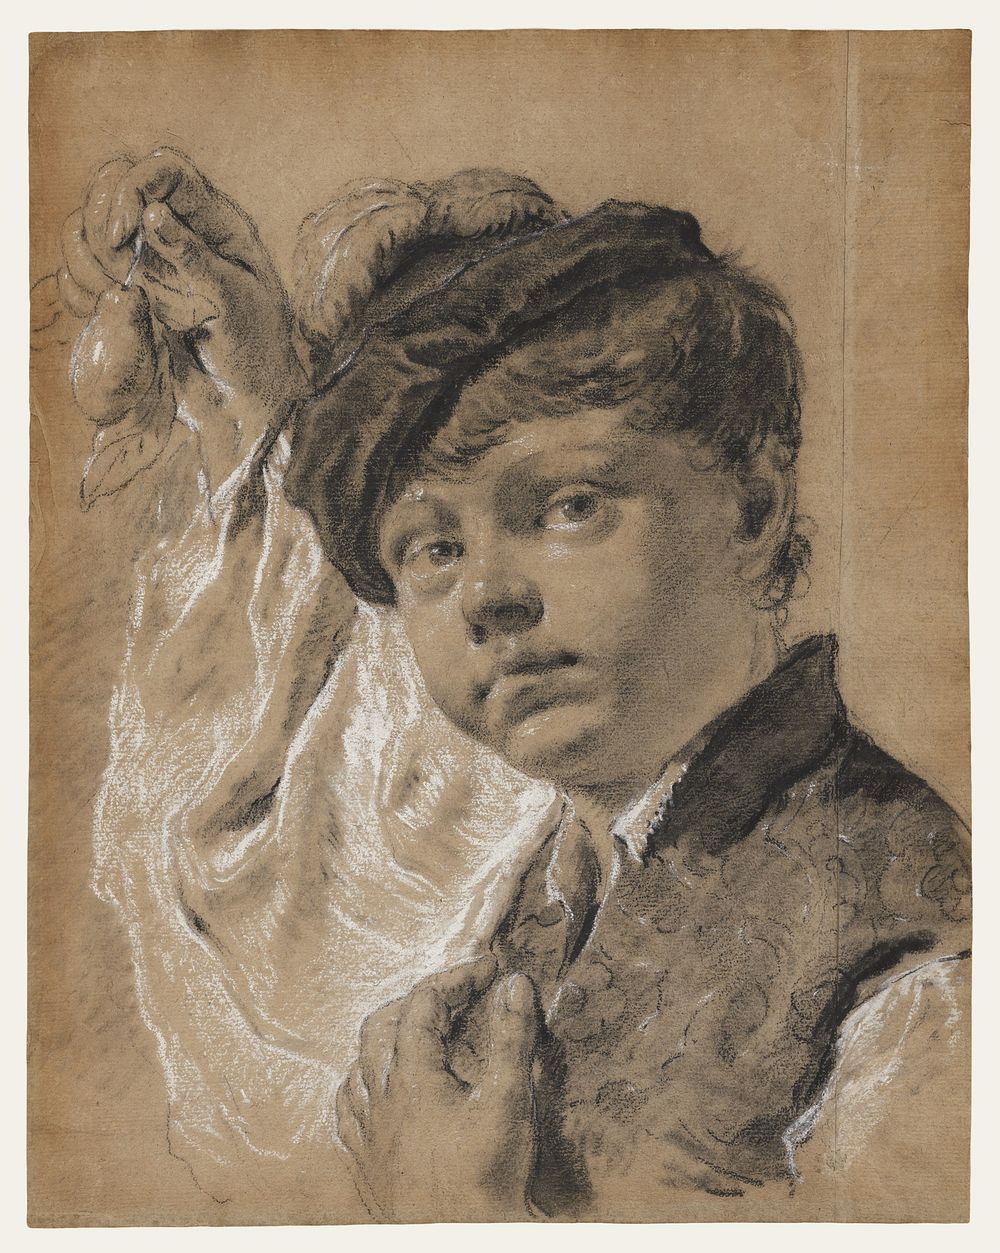 A Boy Holding a Pear (Giacomo Piazzetta?) by Giovanni Battista Piazzetta